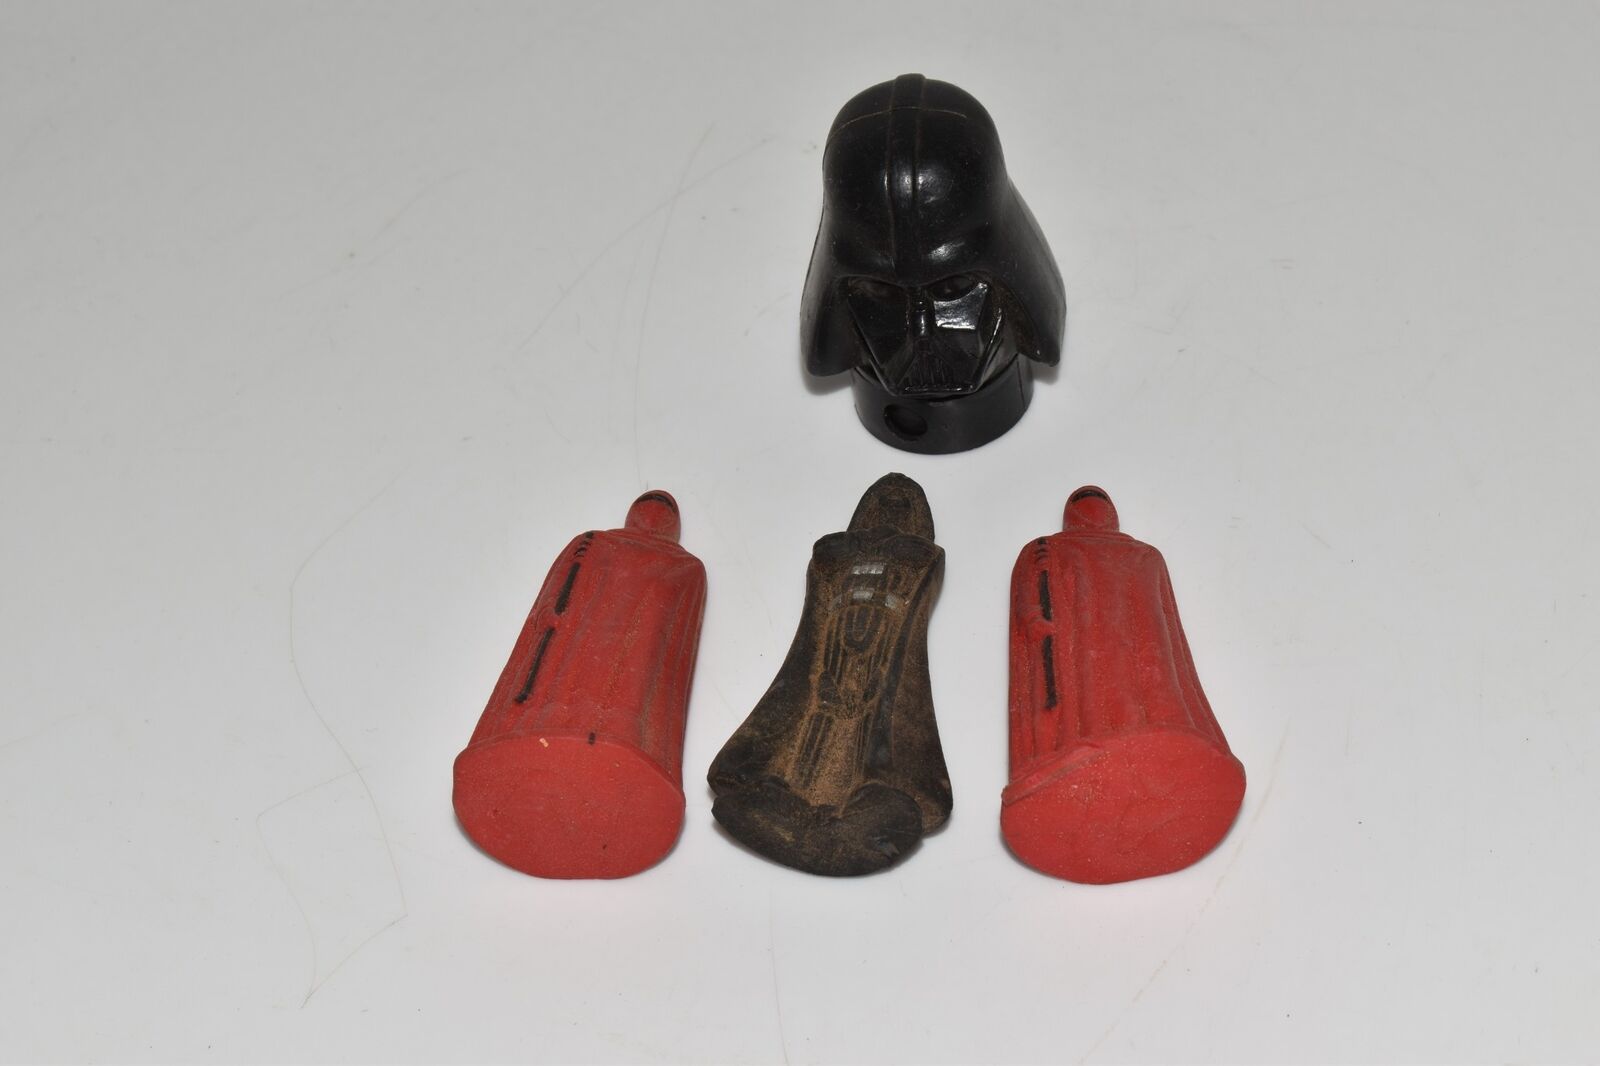 Star Wars Vintage Darth Vader Candy Dispenser & Erasers Lot (LWL33)